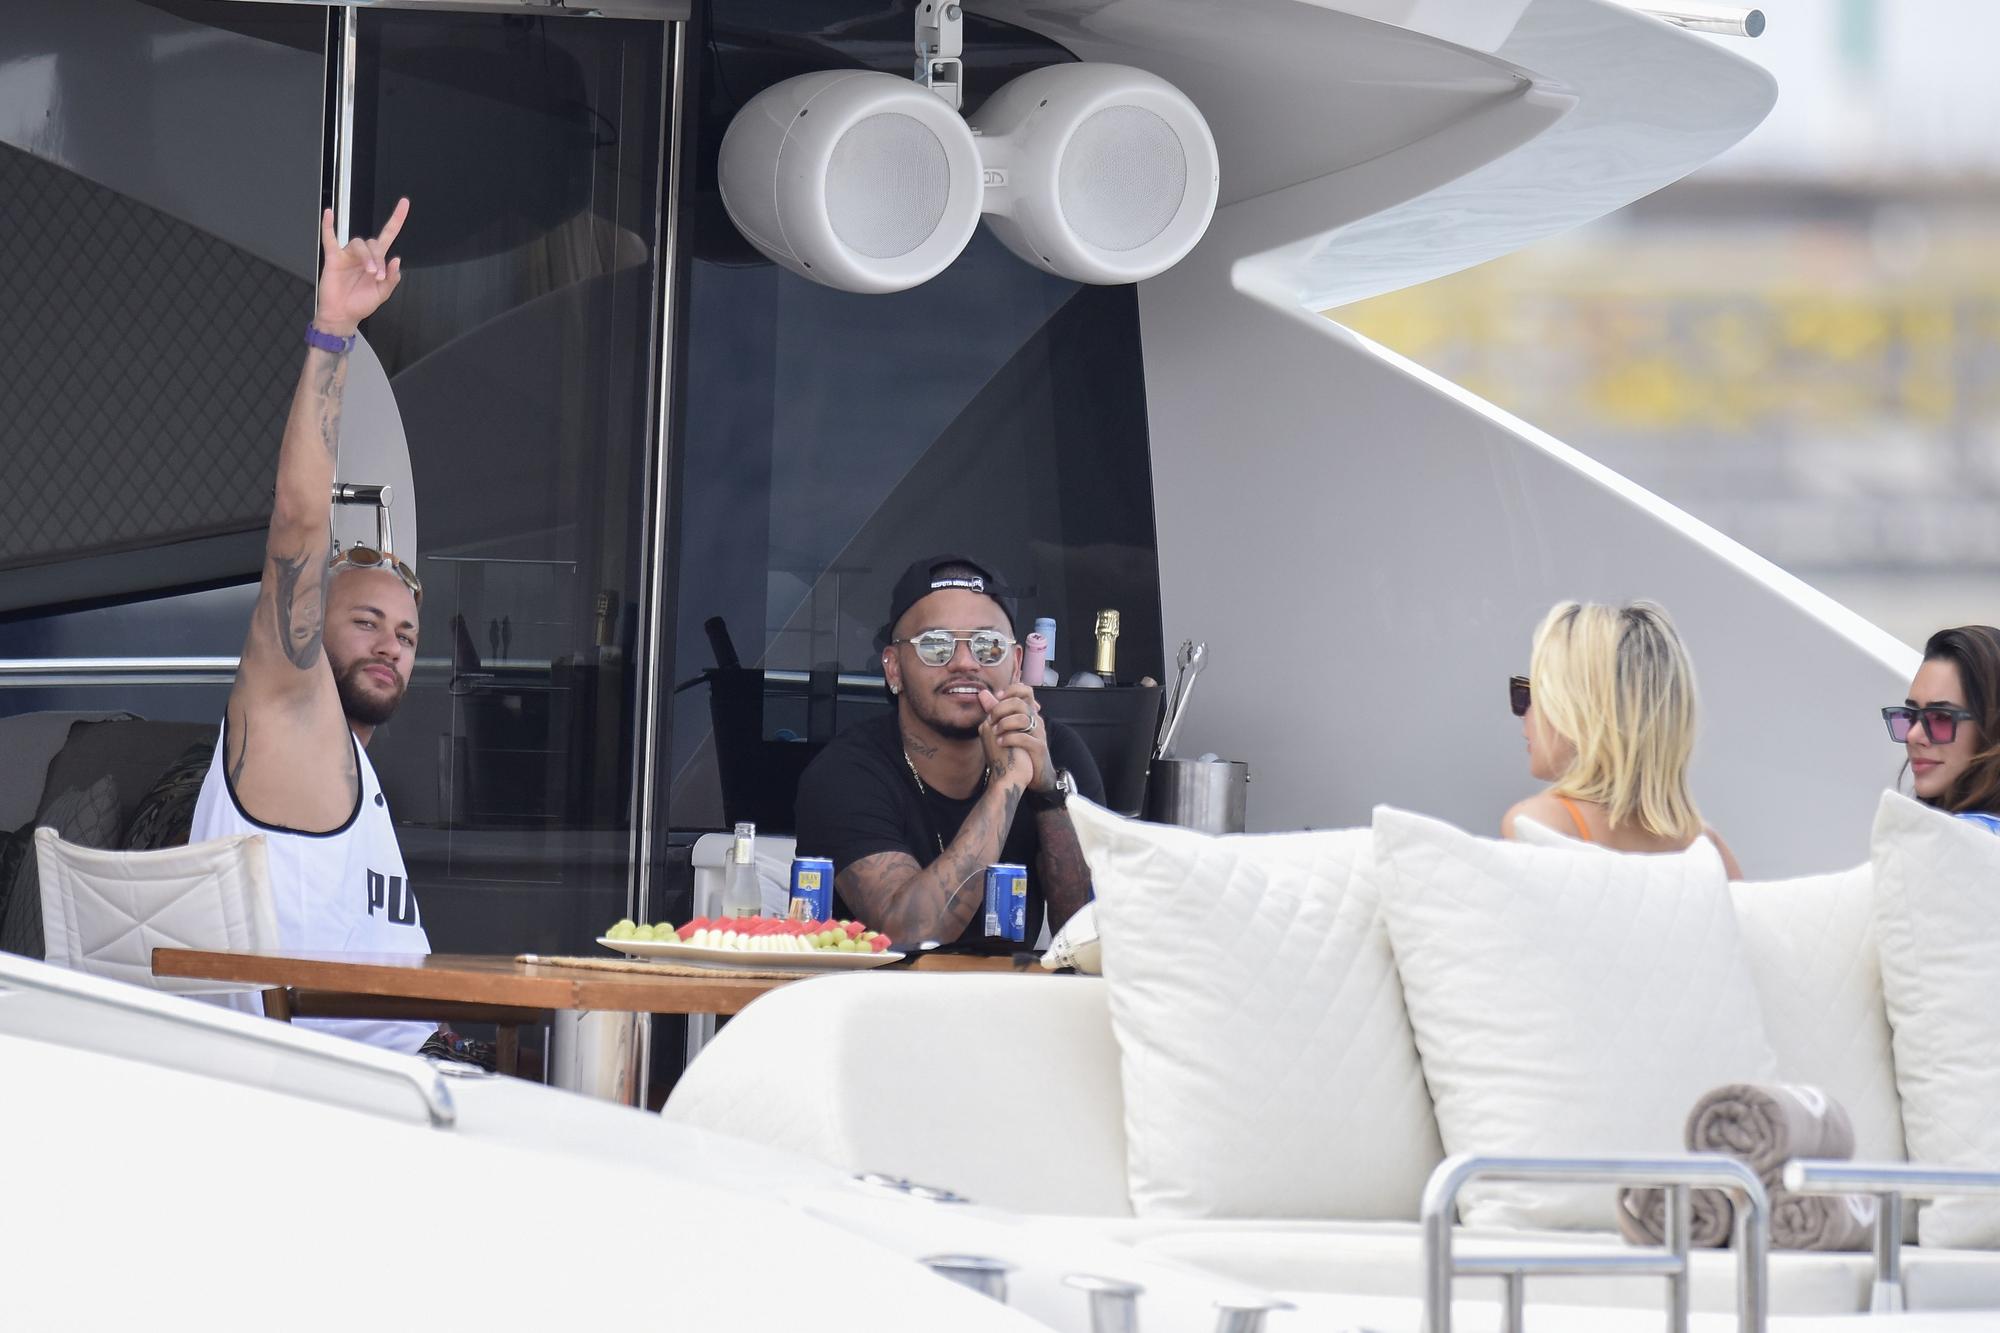 Neymar navega con un grupo de amigos en Ibiza